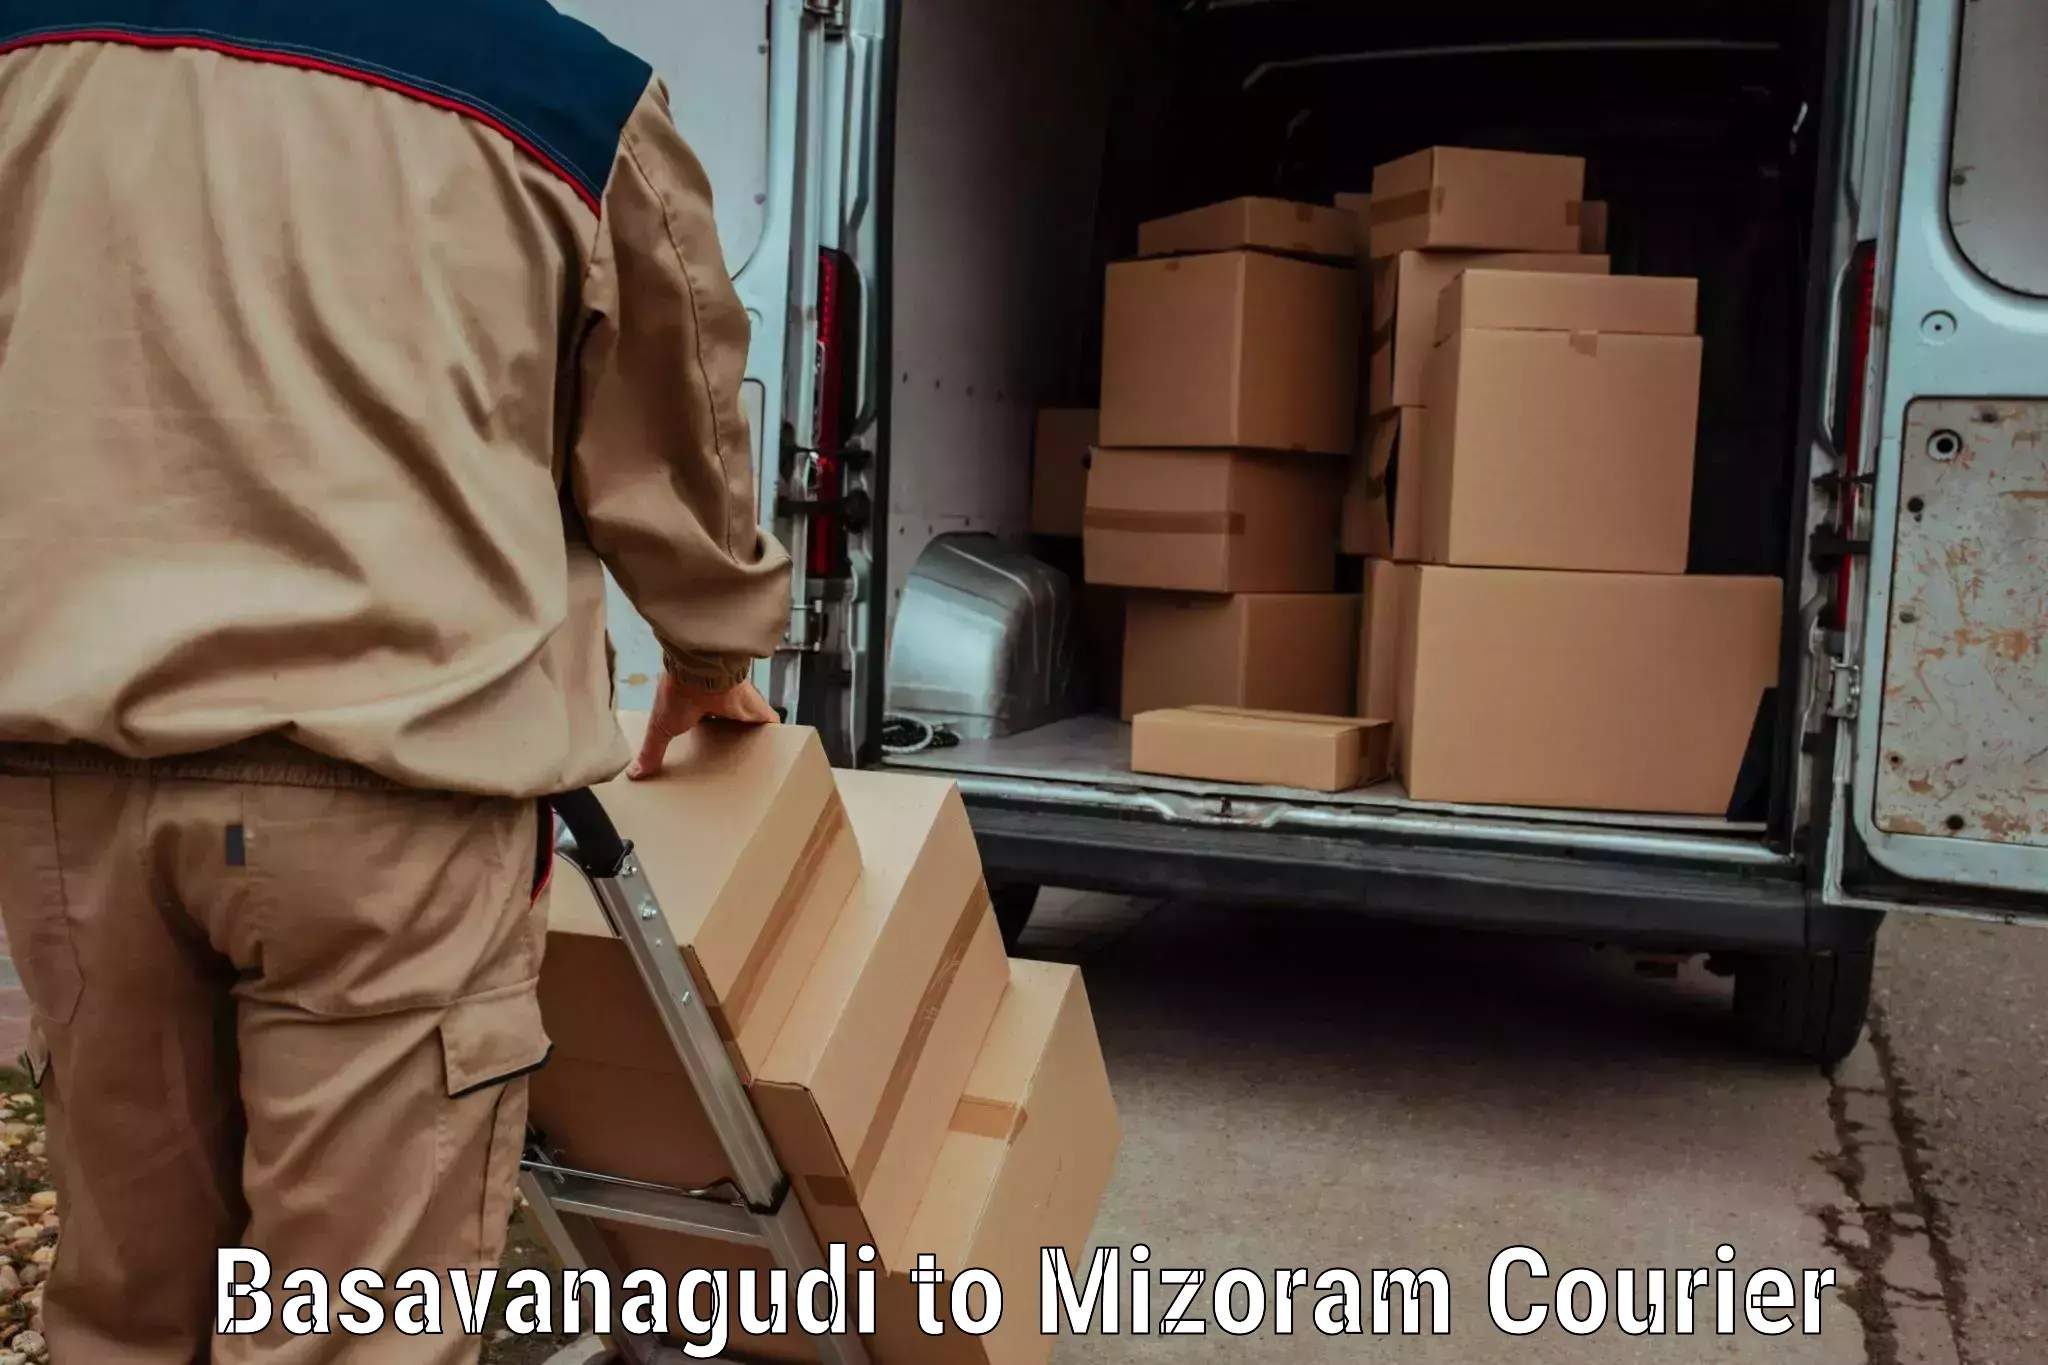 Premium courier solutions Basavanagudi to Mizoram